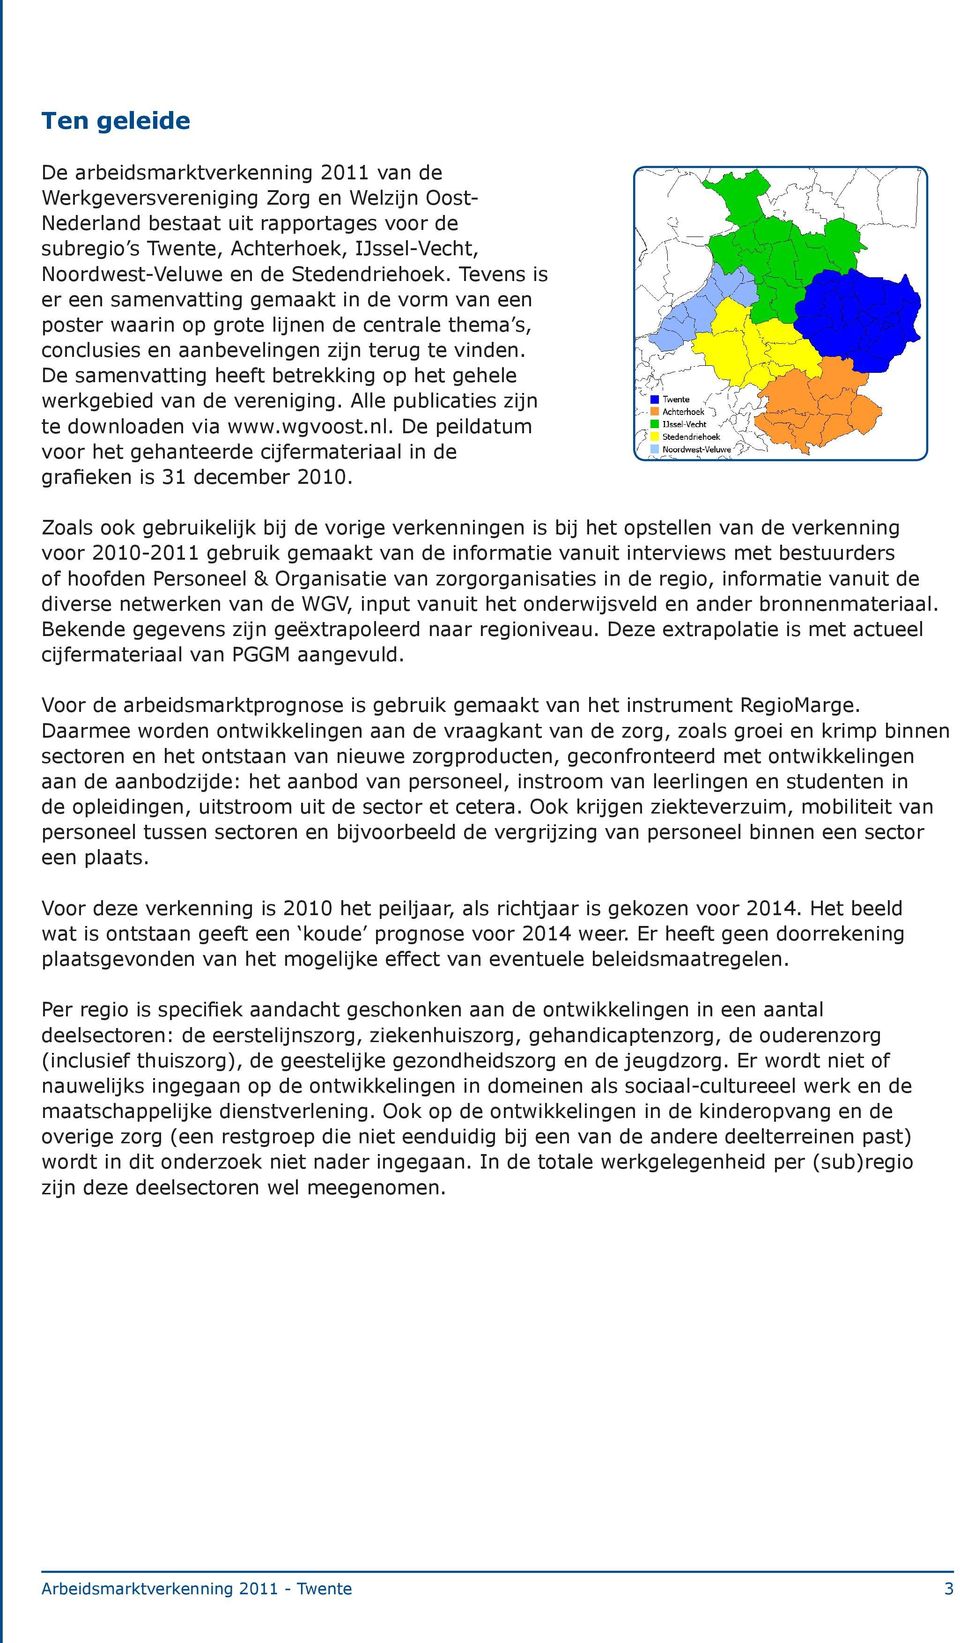 De samenvatting heeft betrekking op het gehele werkgebied van de vereniging. Alle publicaties zijn te downloaden via www.wgvoost.nl. De peildatum voor het gehanteerde cijfermateriaal in de grafieken is 31 december 2010.